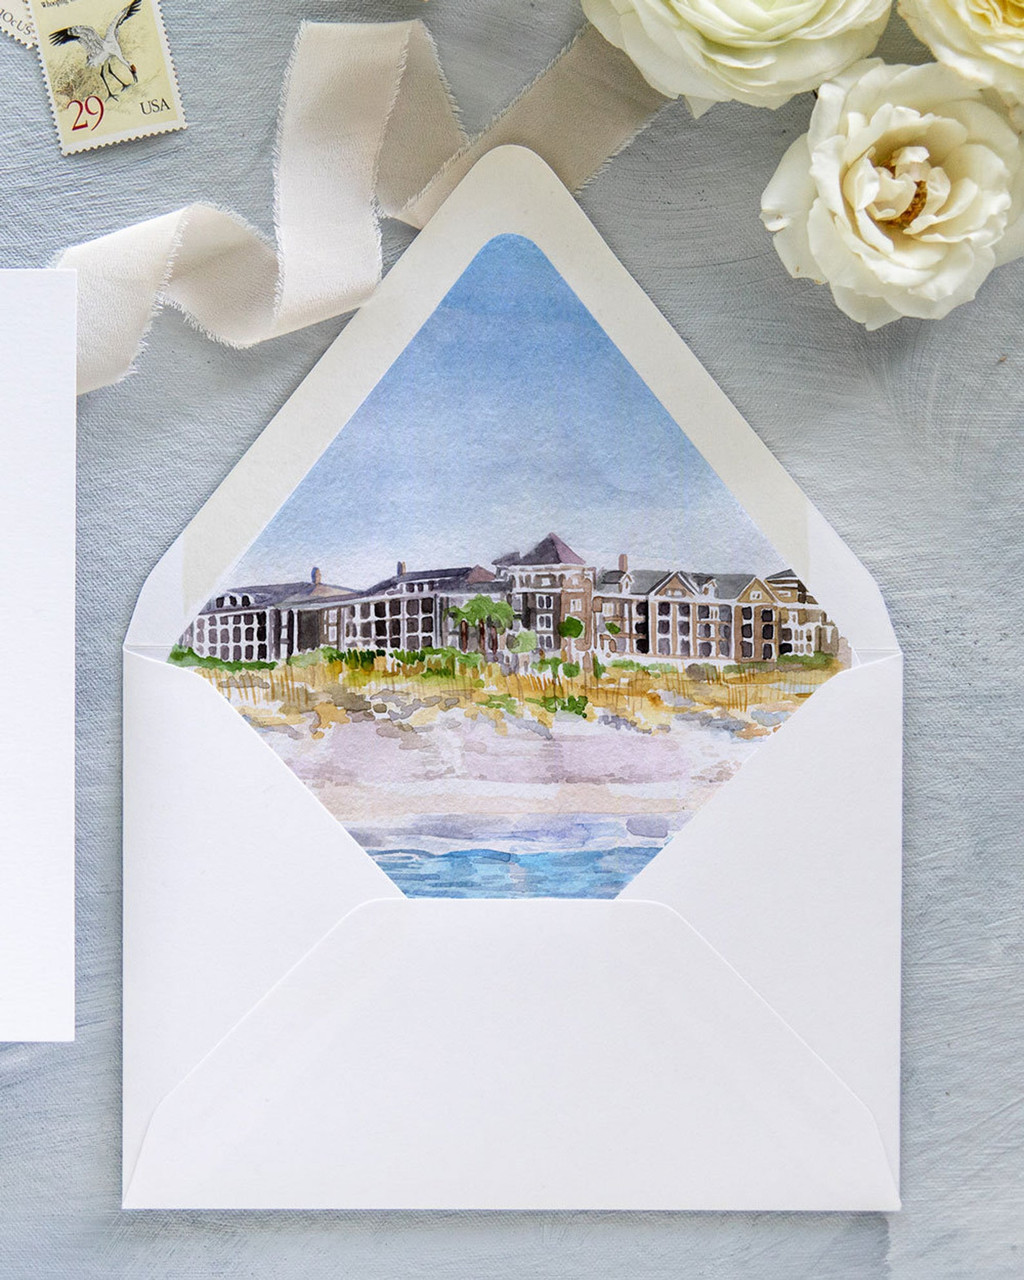 Watercolor Envelope Liner Blue, Pattern Envelopes With Liners 5x7, Painted Envelope  Liner Insert, A7 Envelope Liner Design, Diy Wedding 